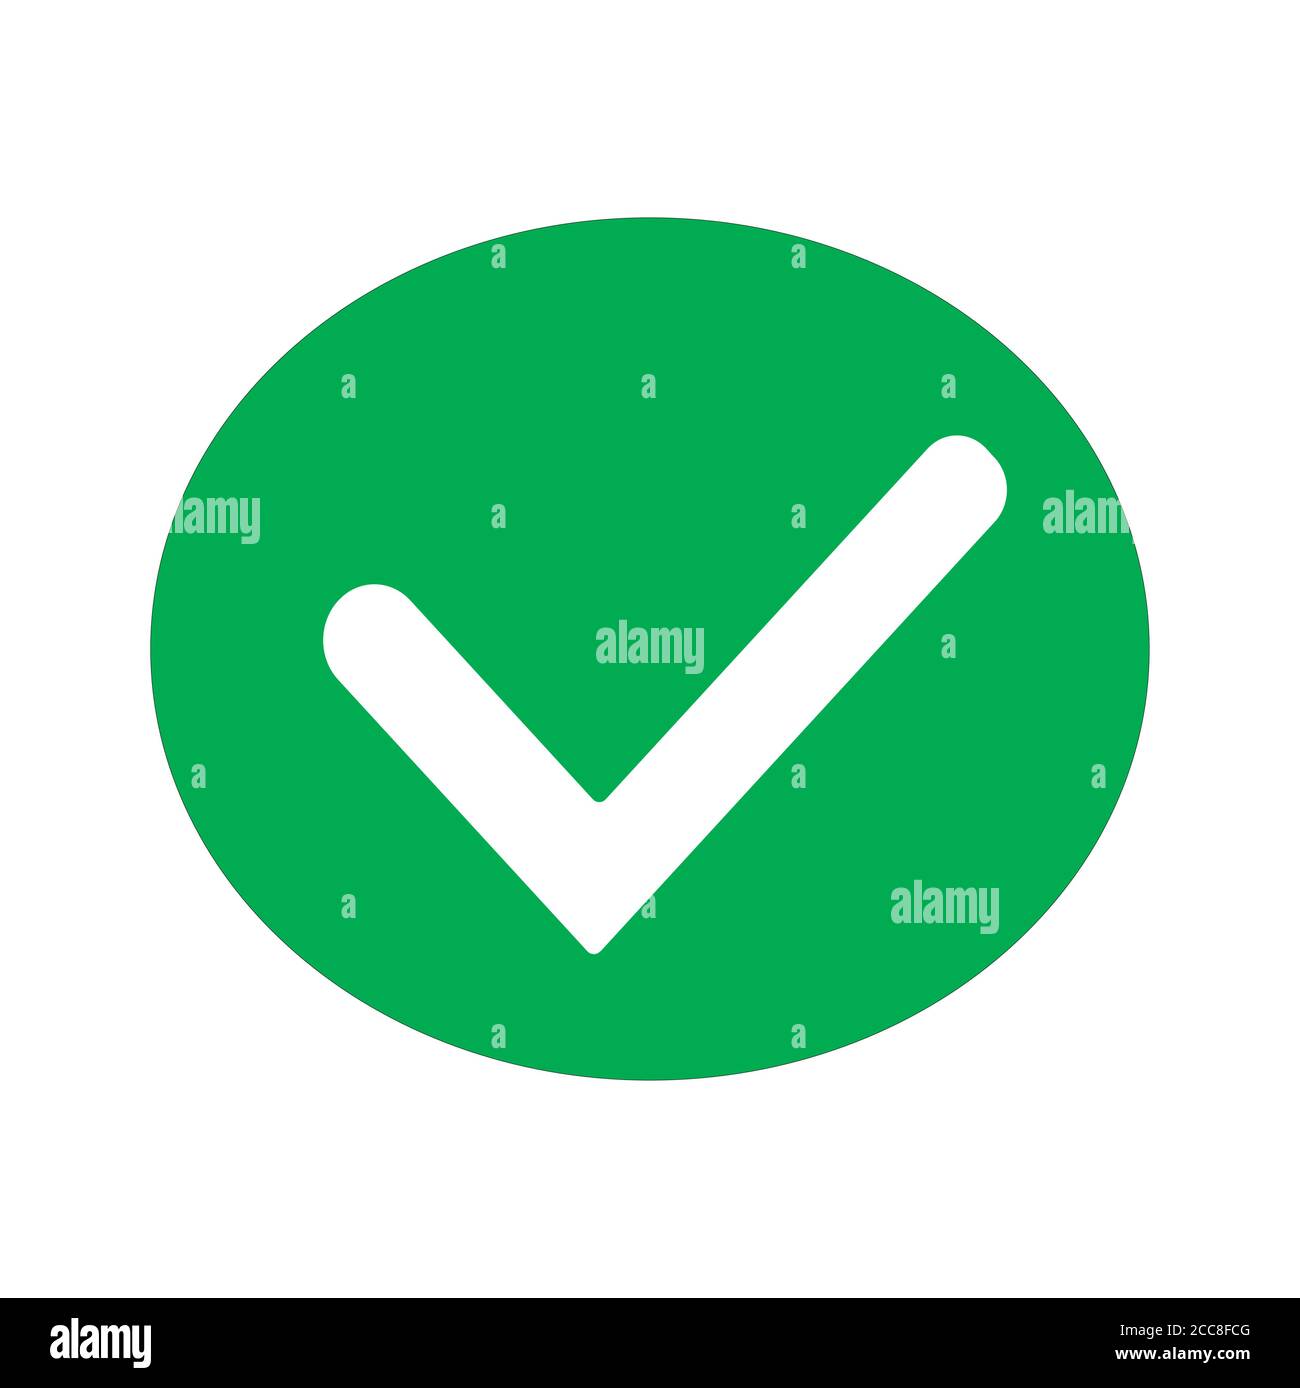 Ja / Akzeptieren / Korrigieren / Häkchen markieren, Vektorgrafik für Websymbole, grün auf weißem, isoliertem Hintergrund. Stock Vektor